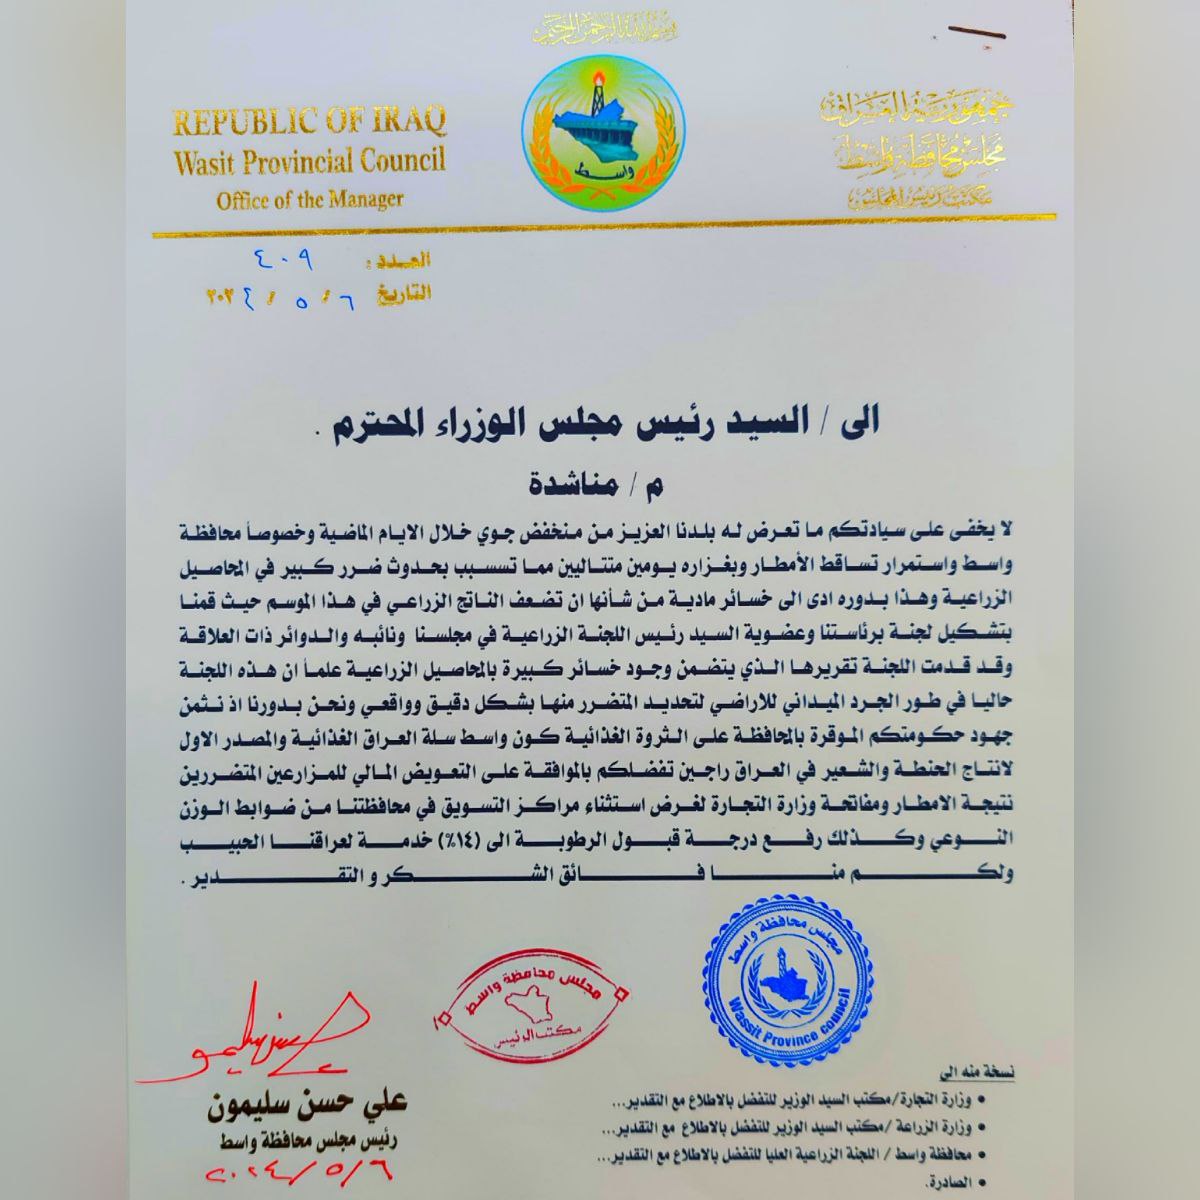 طلب من واسط على مكتب السوداني يتضمن تعويض مزارعي الحنطة ورفع نسبة الرطوبة المقبولة